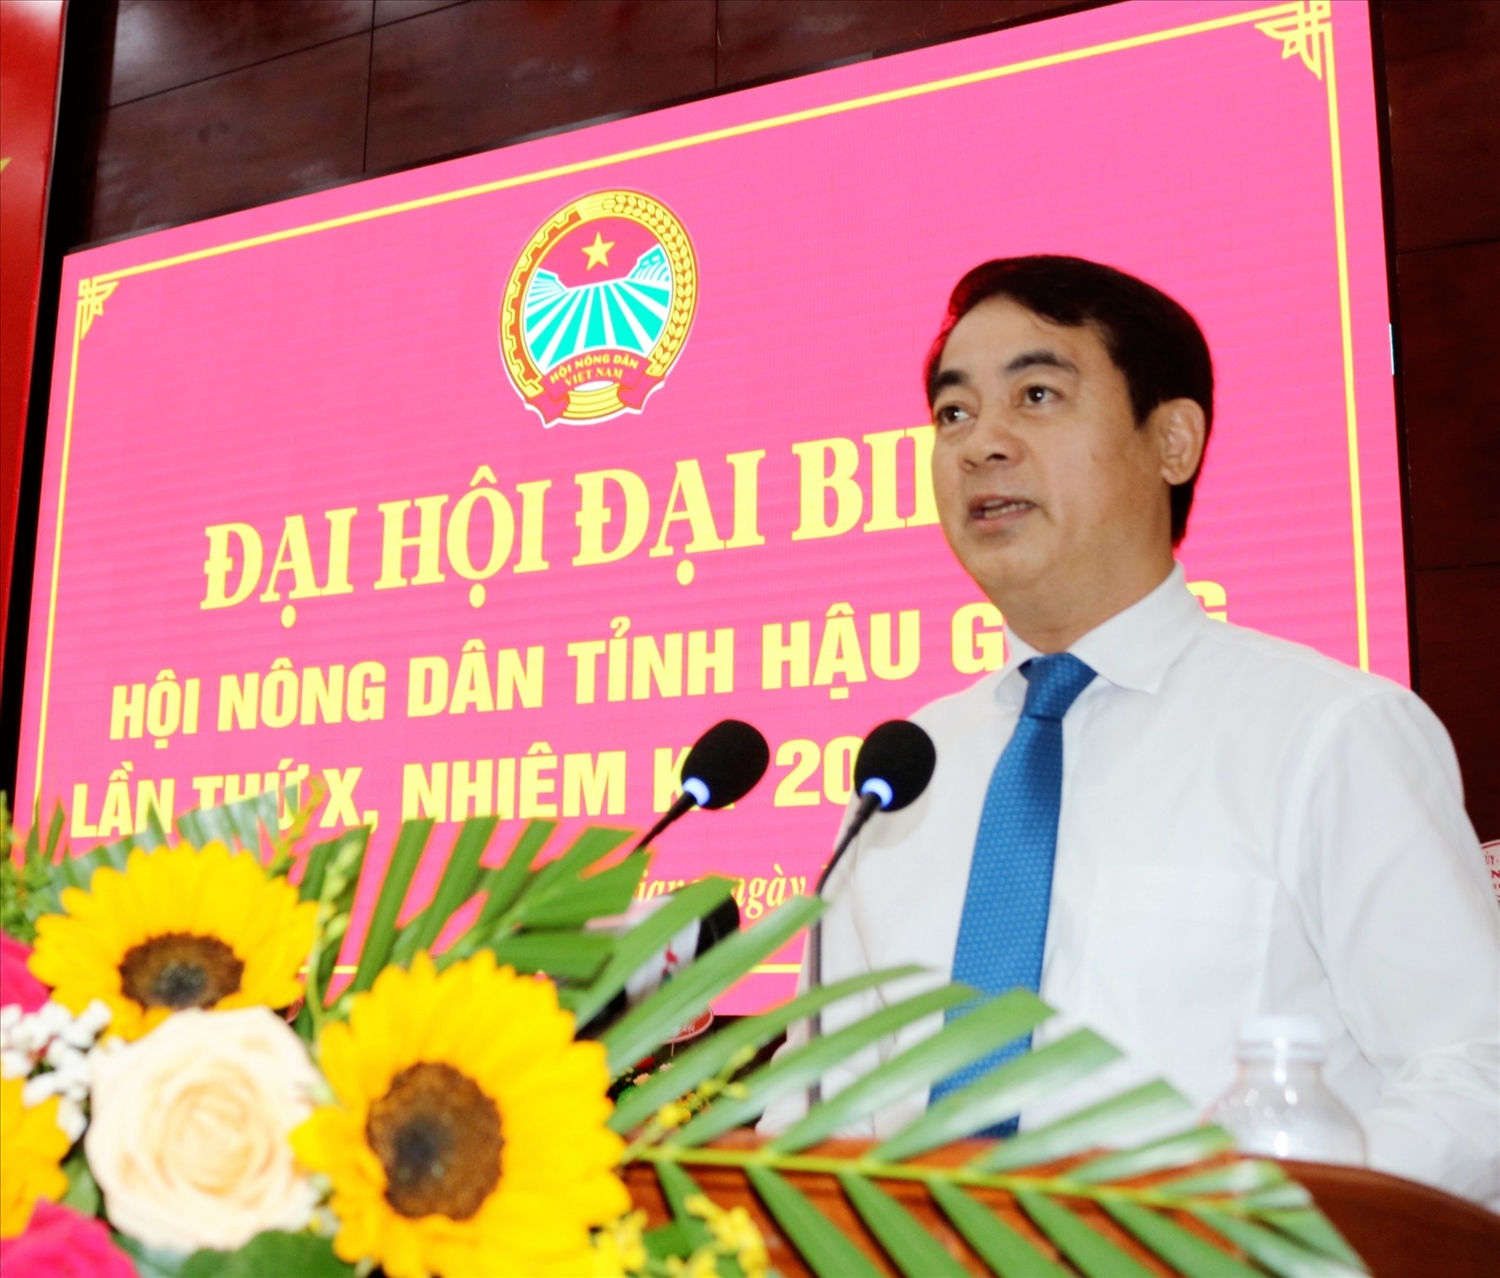 Ông Nghiêm Xuân Thành - Ủy viên BCH Trung ương Đảng, Bí thư Tỉnh ủy Hậu Giang phát biểu tại Đại hội